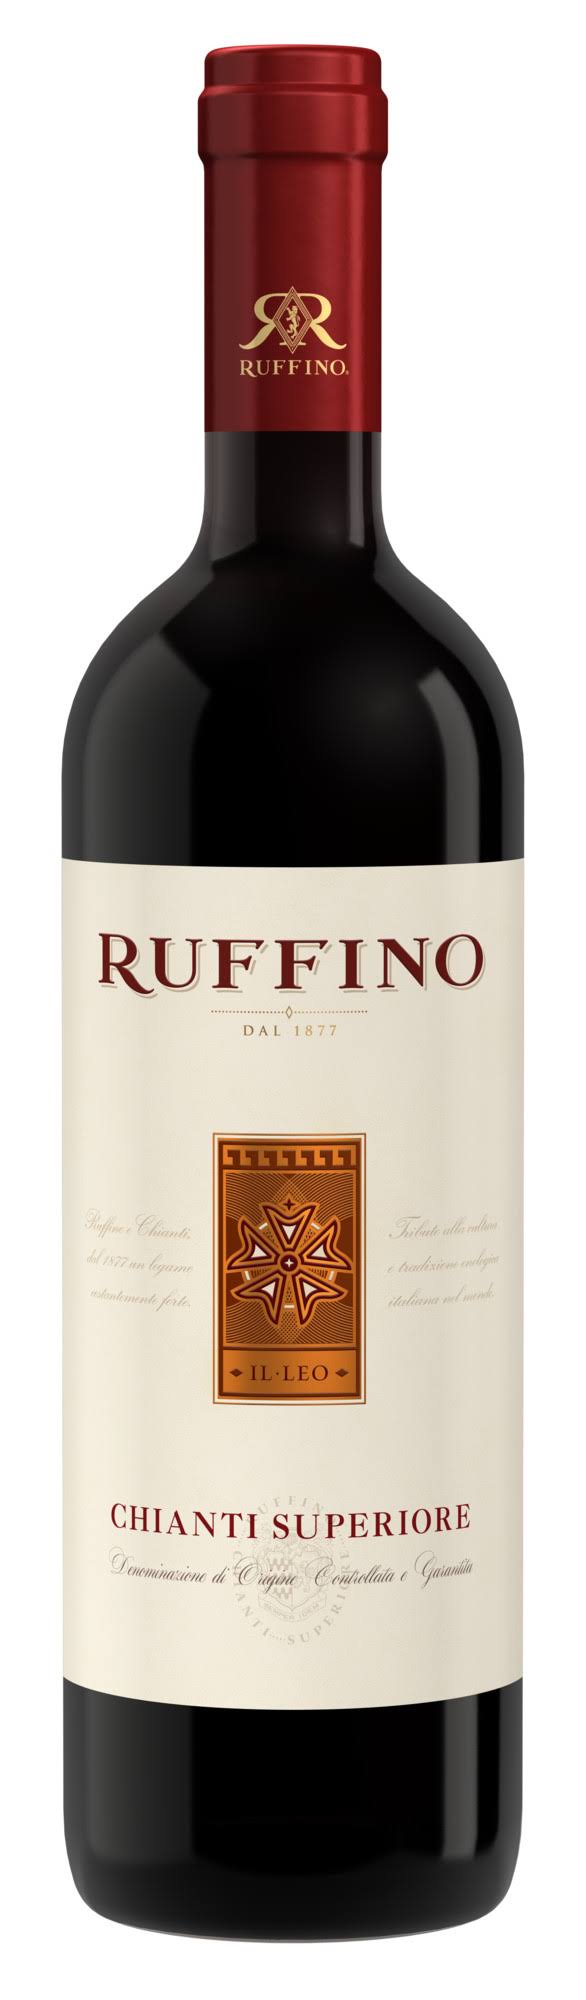 Ruffino Chianti Superiore, 2007 - 750 ml